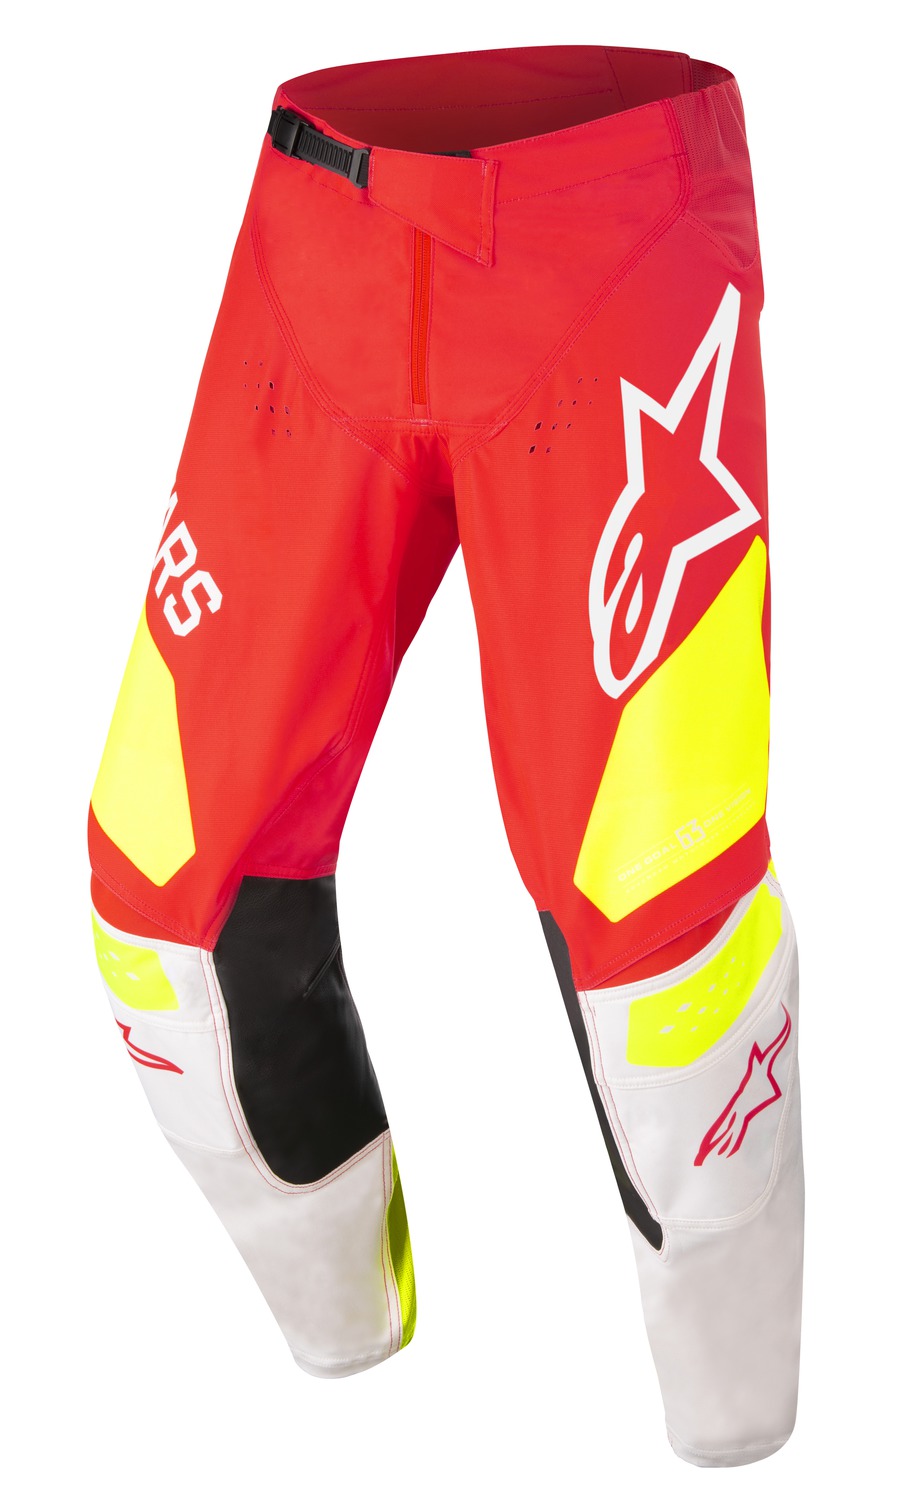 kalhoty RACER FACTORY, ALPINESTARS, dětské (červená fluo/bílá/žlutá fluo)